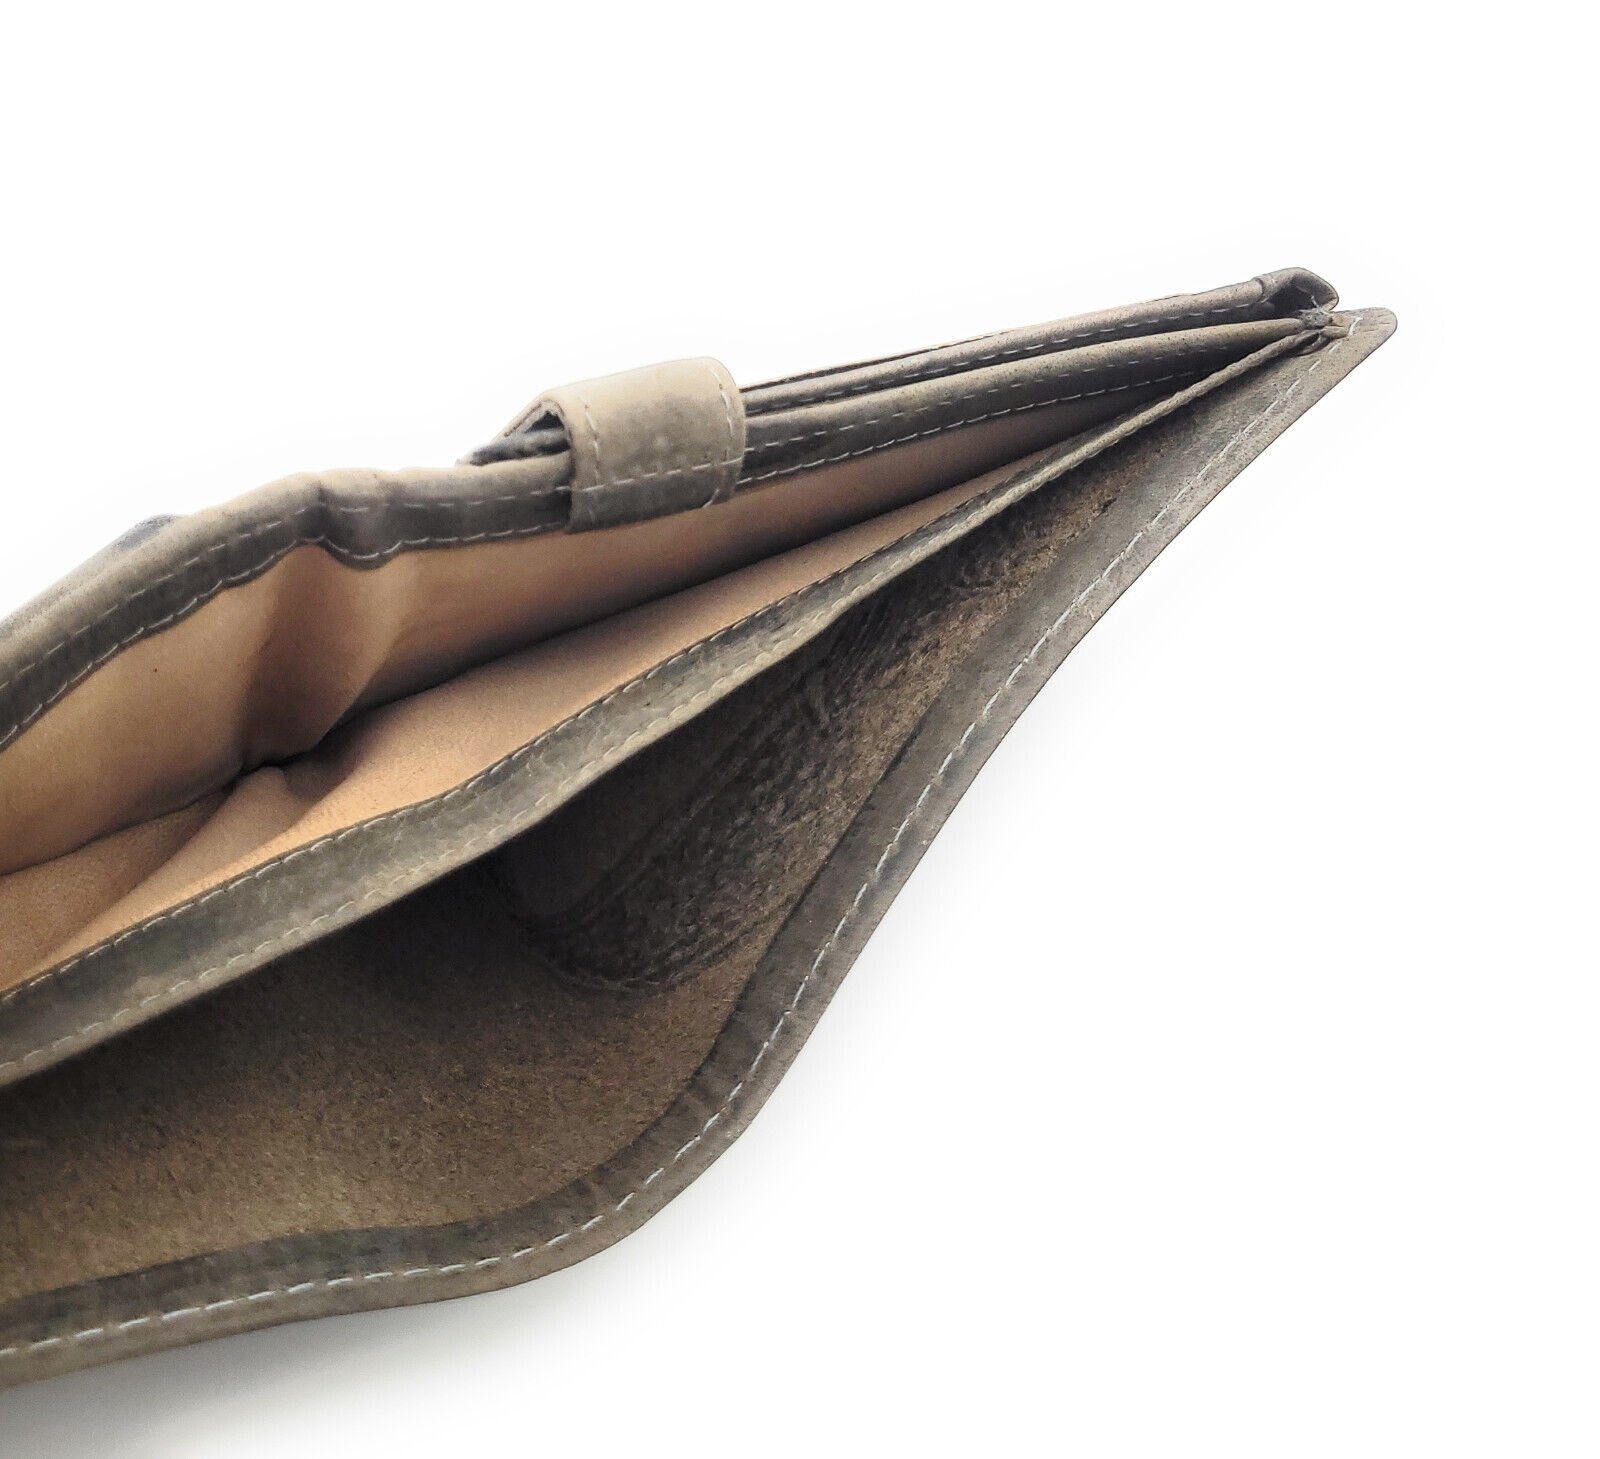 JOCKEY CLUB RFID Hecht Grau Geldbörse echt Leder Fischer Schutz, Portemonnaie für schönes mit Angler und Geschenk